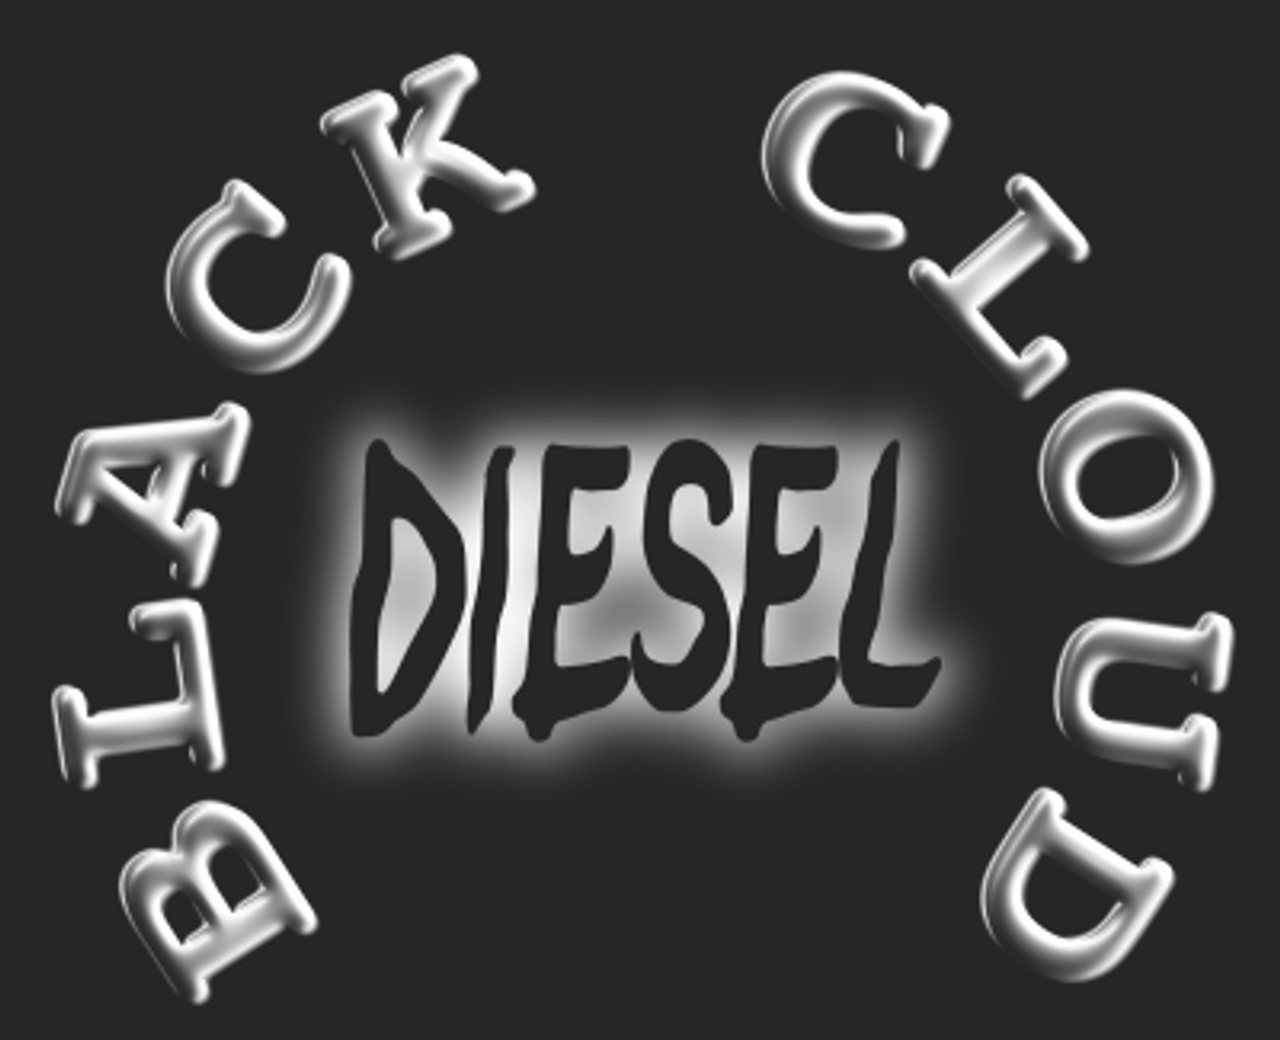 Black Cloud Diesel Logo Sticker Truck Window Stickers Free Shipping